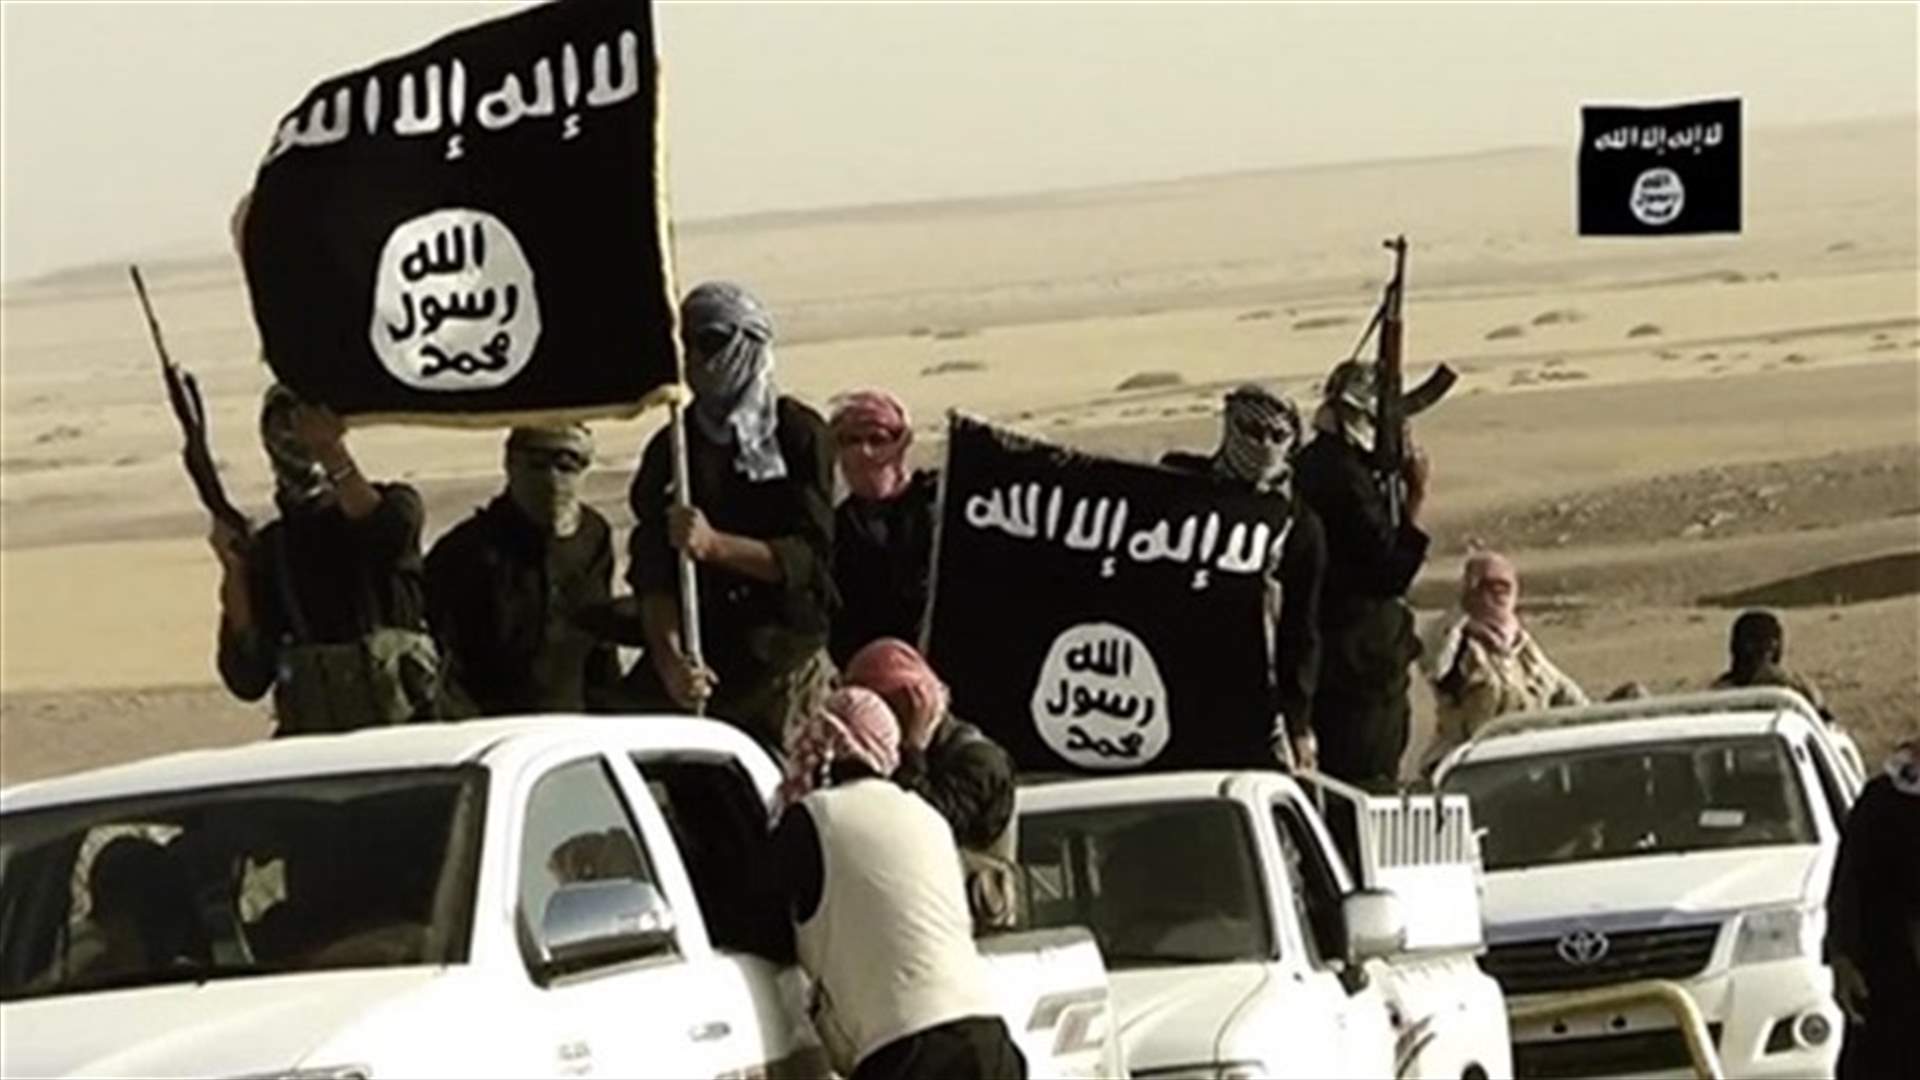 واشنطن تفرض عقوبات على فروع داعش في ليبيا واليمن والسعودية